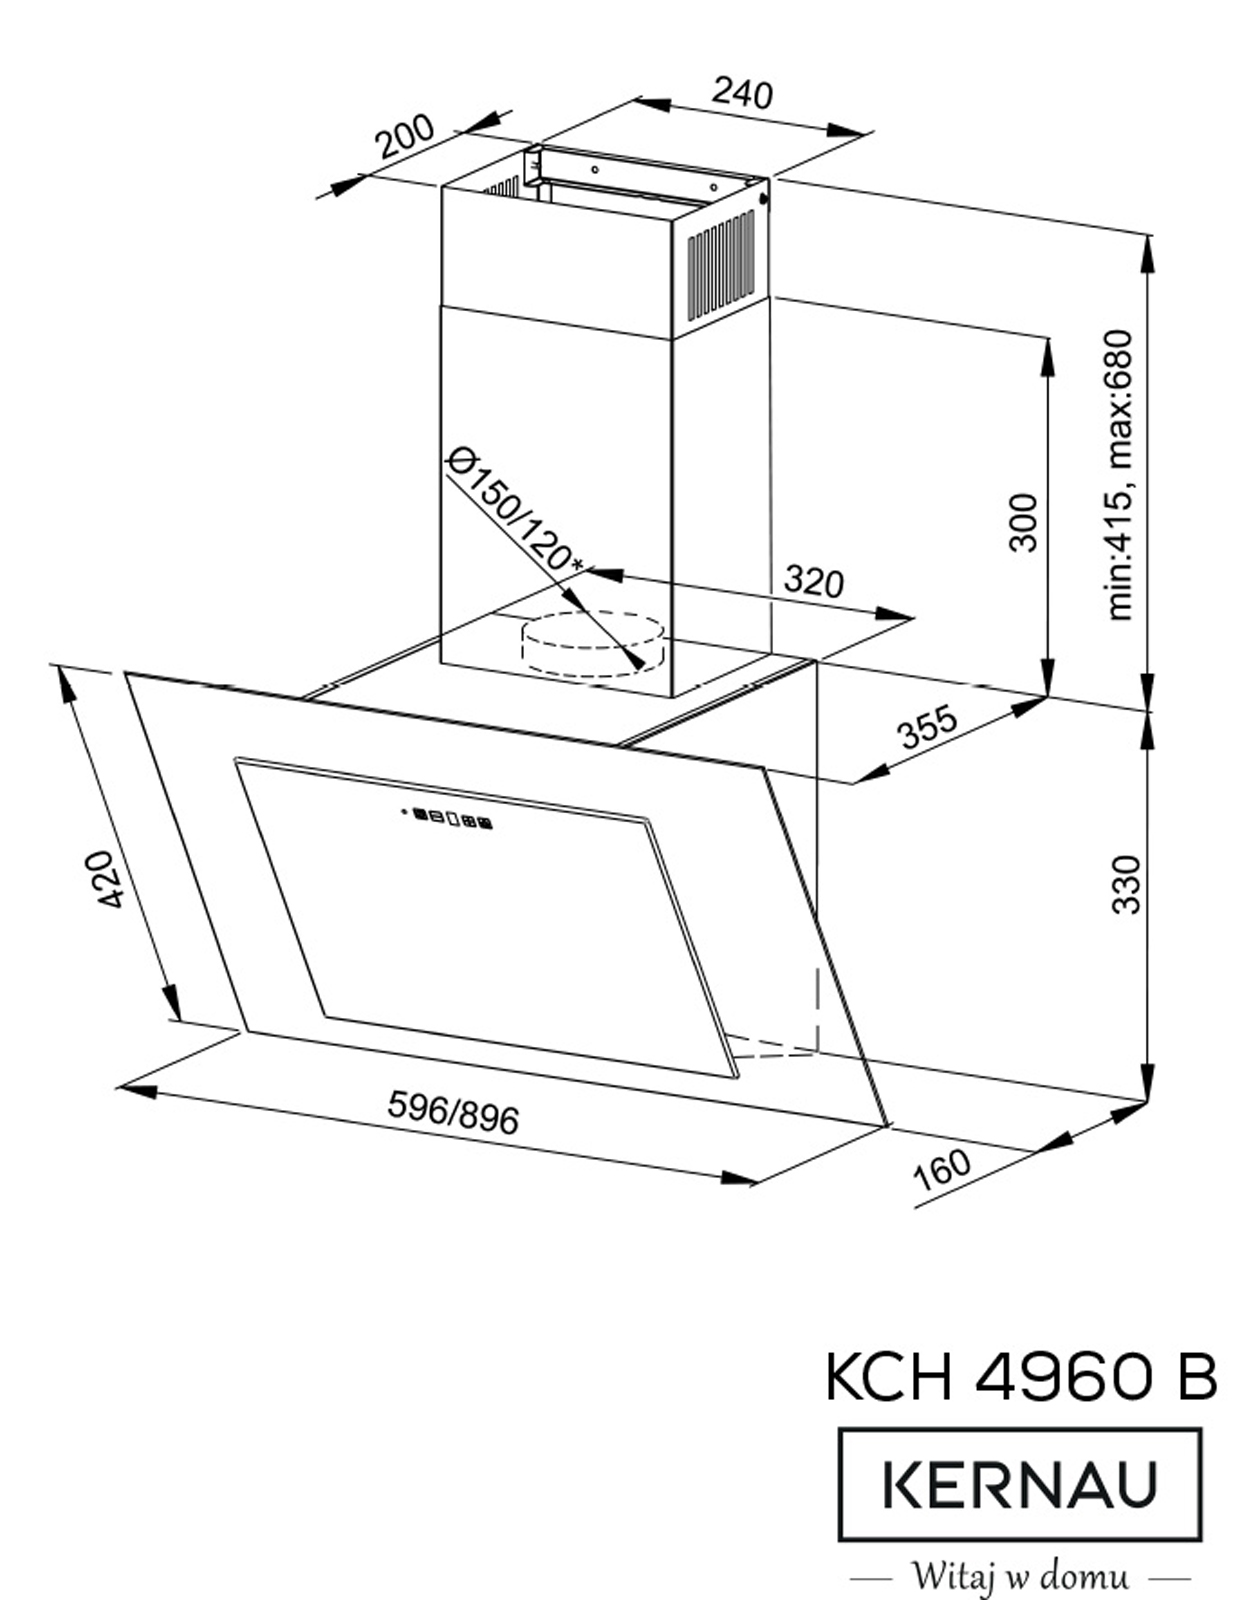 KCH 4960 B